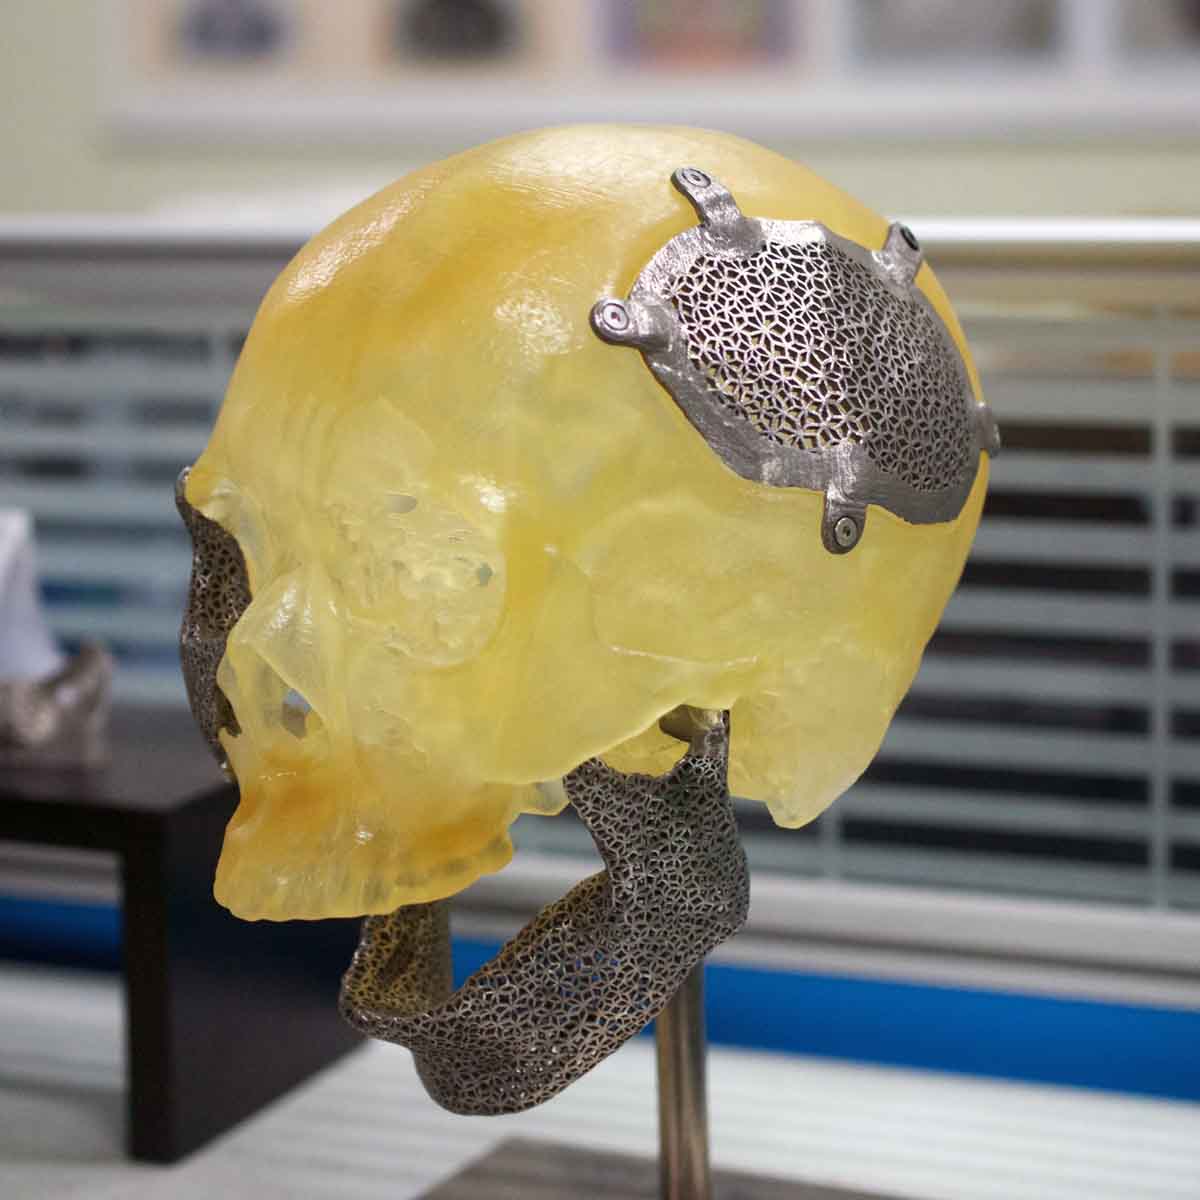 ITRI optical engine metal 3D printer 3D printed medical implant